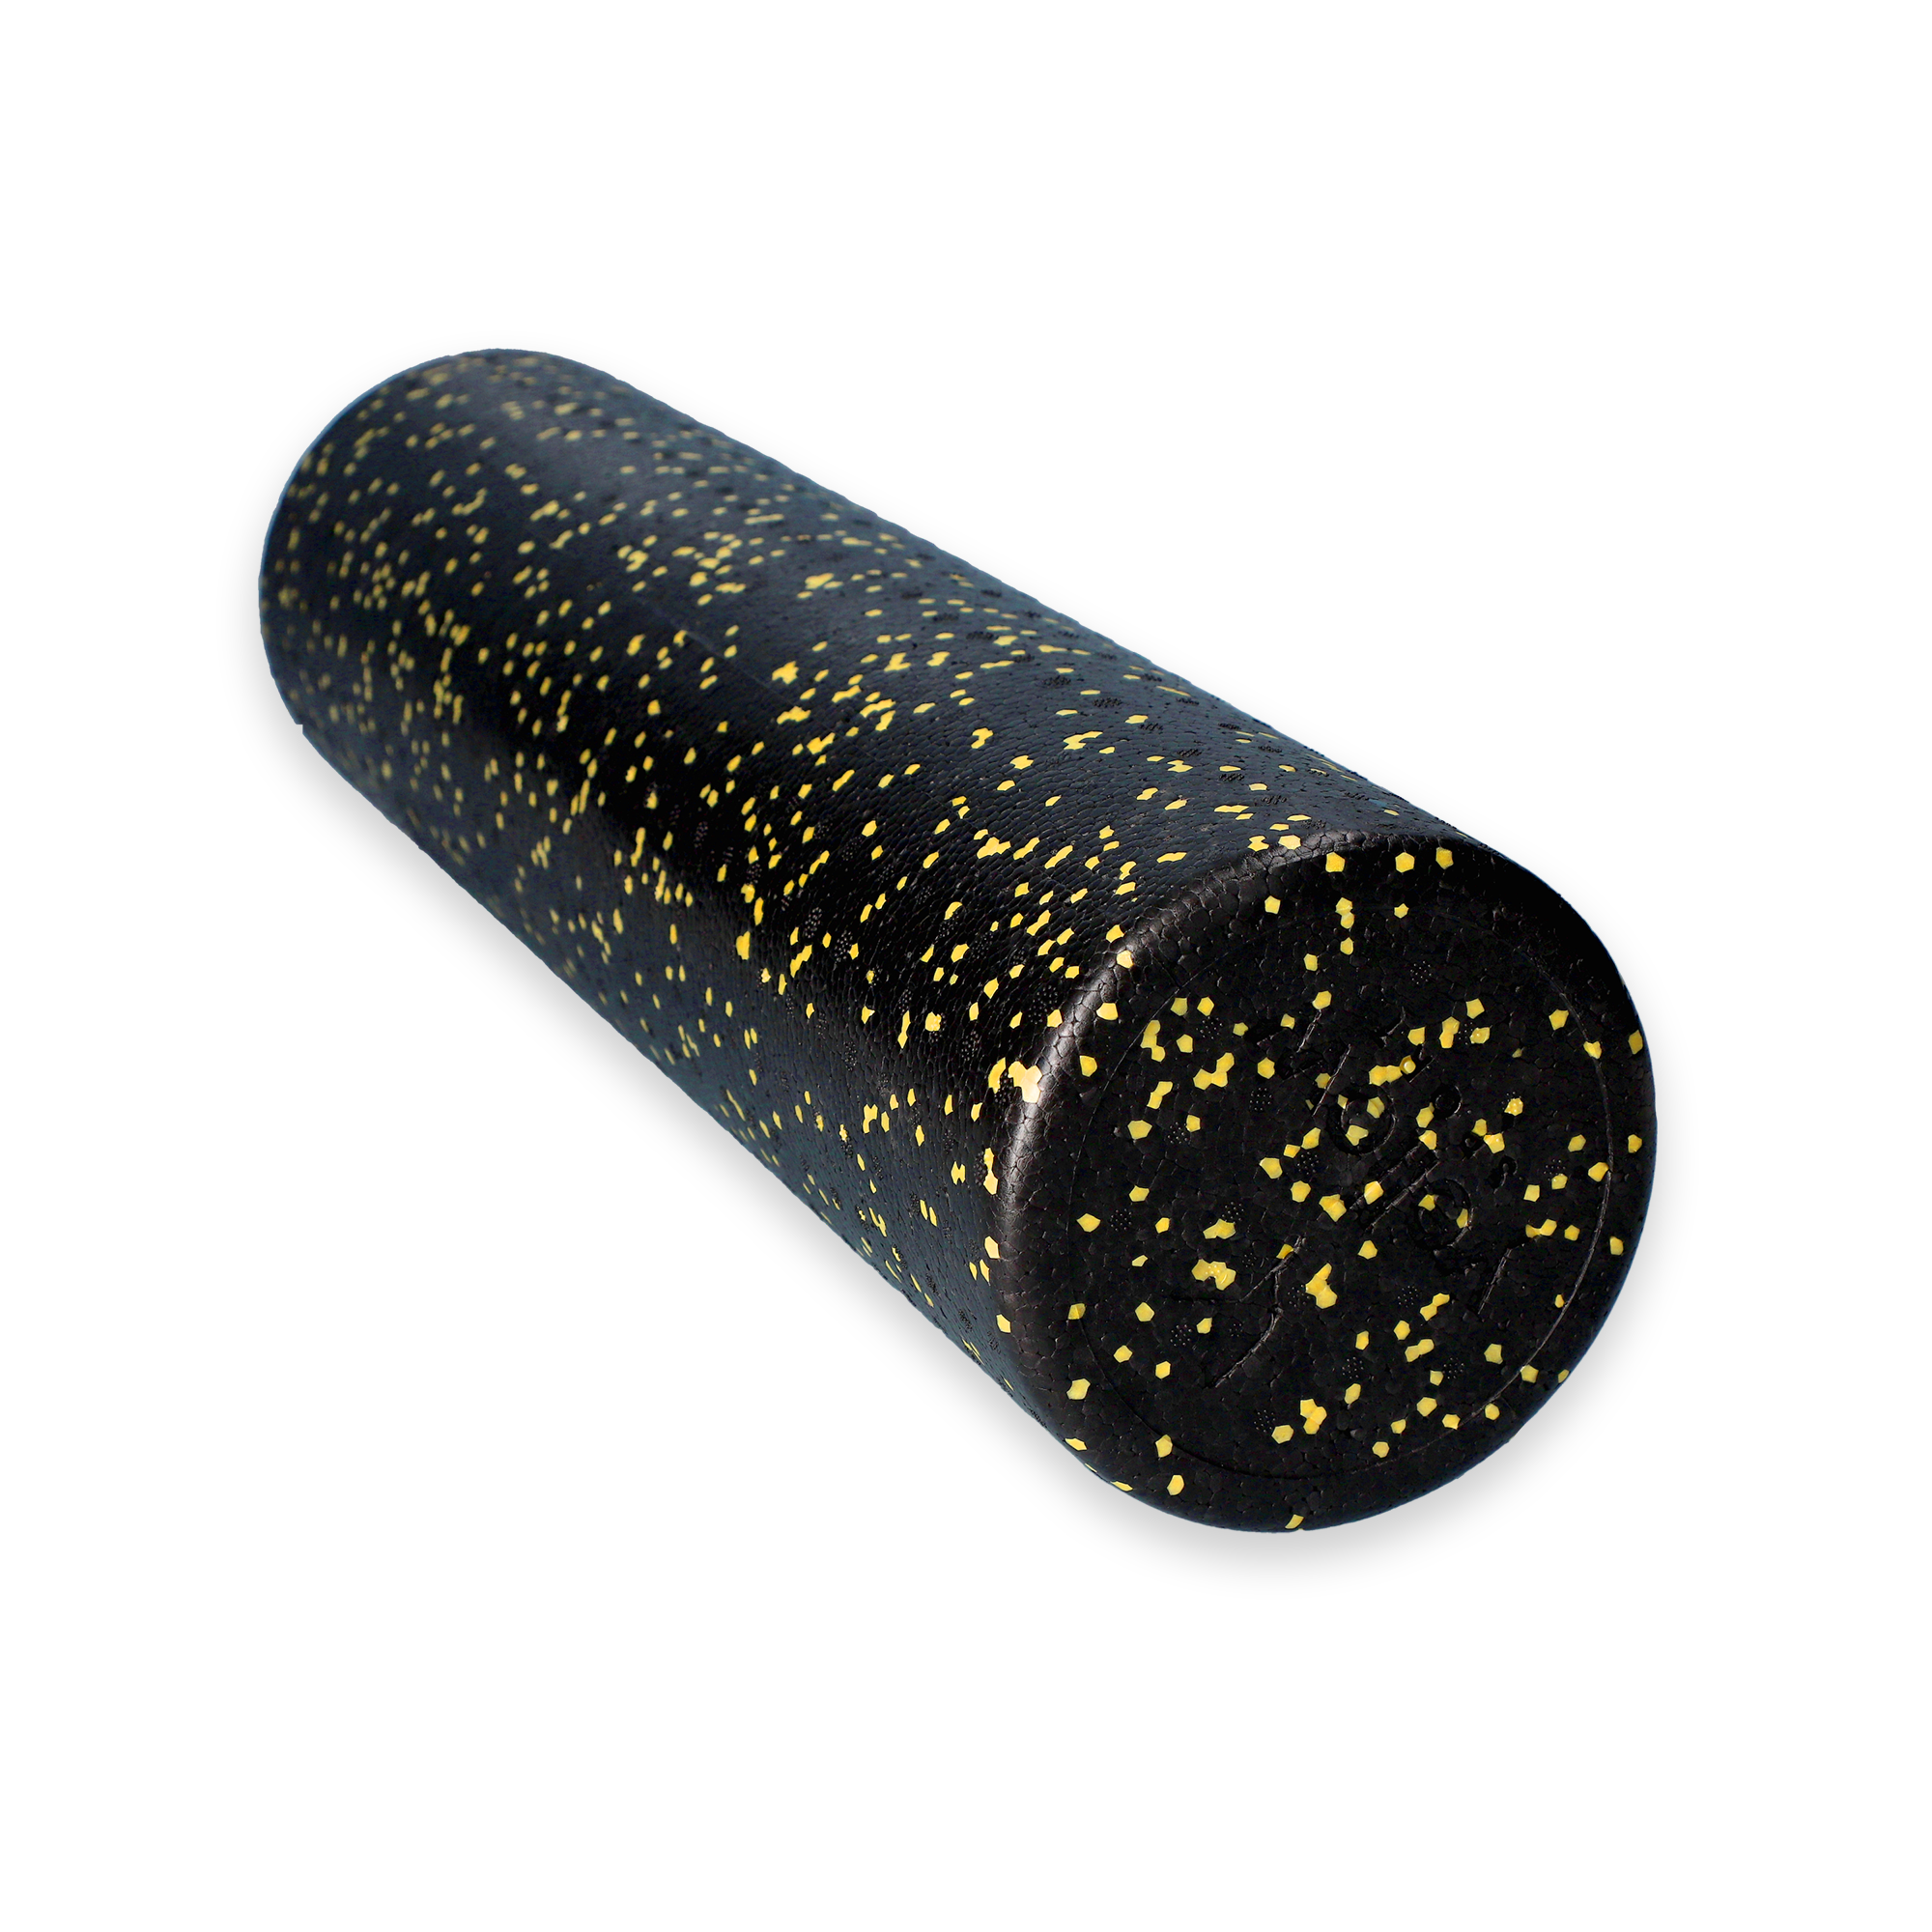 Wałek do masażu yellowROLLER tworzywo EPP, czarno-żółty, 60cm